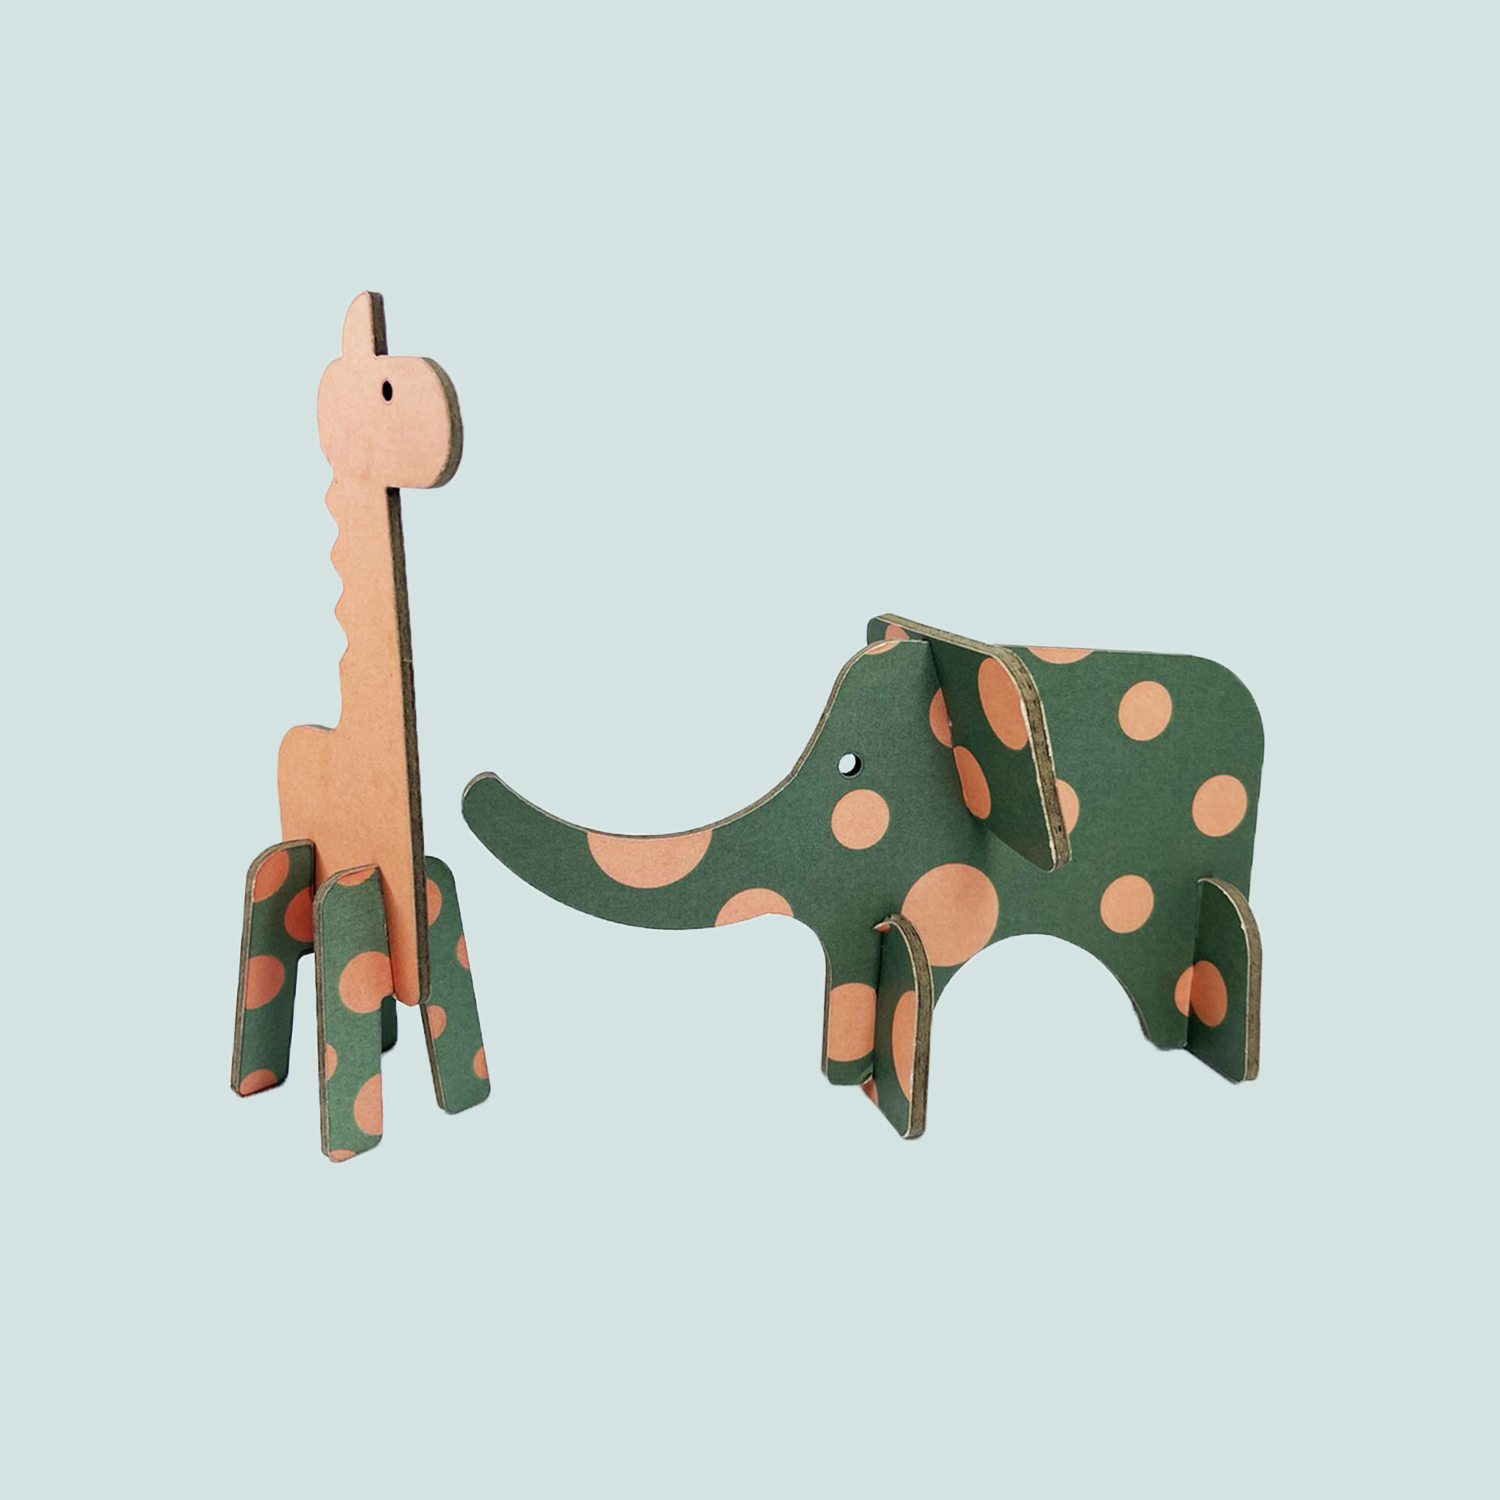 Little giraffe and elephant